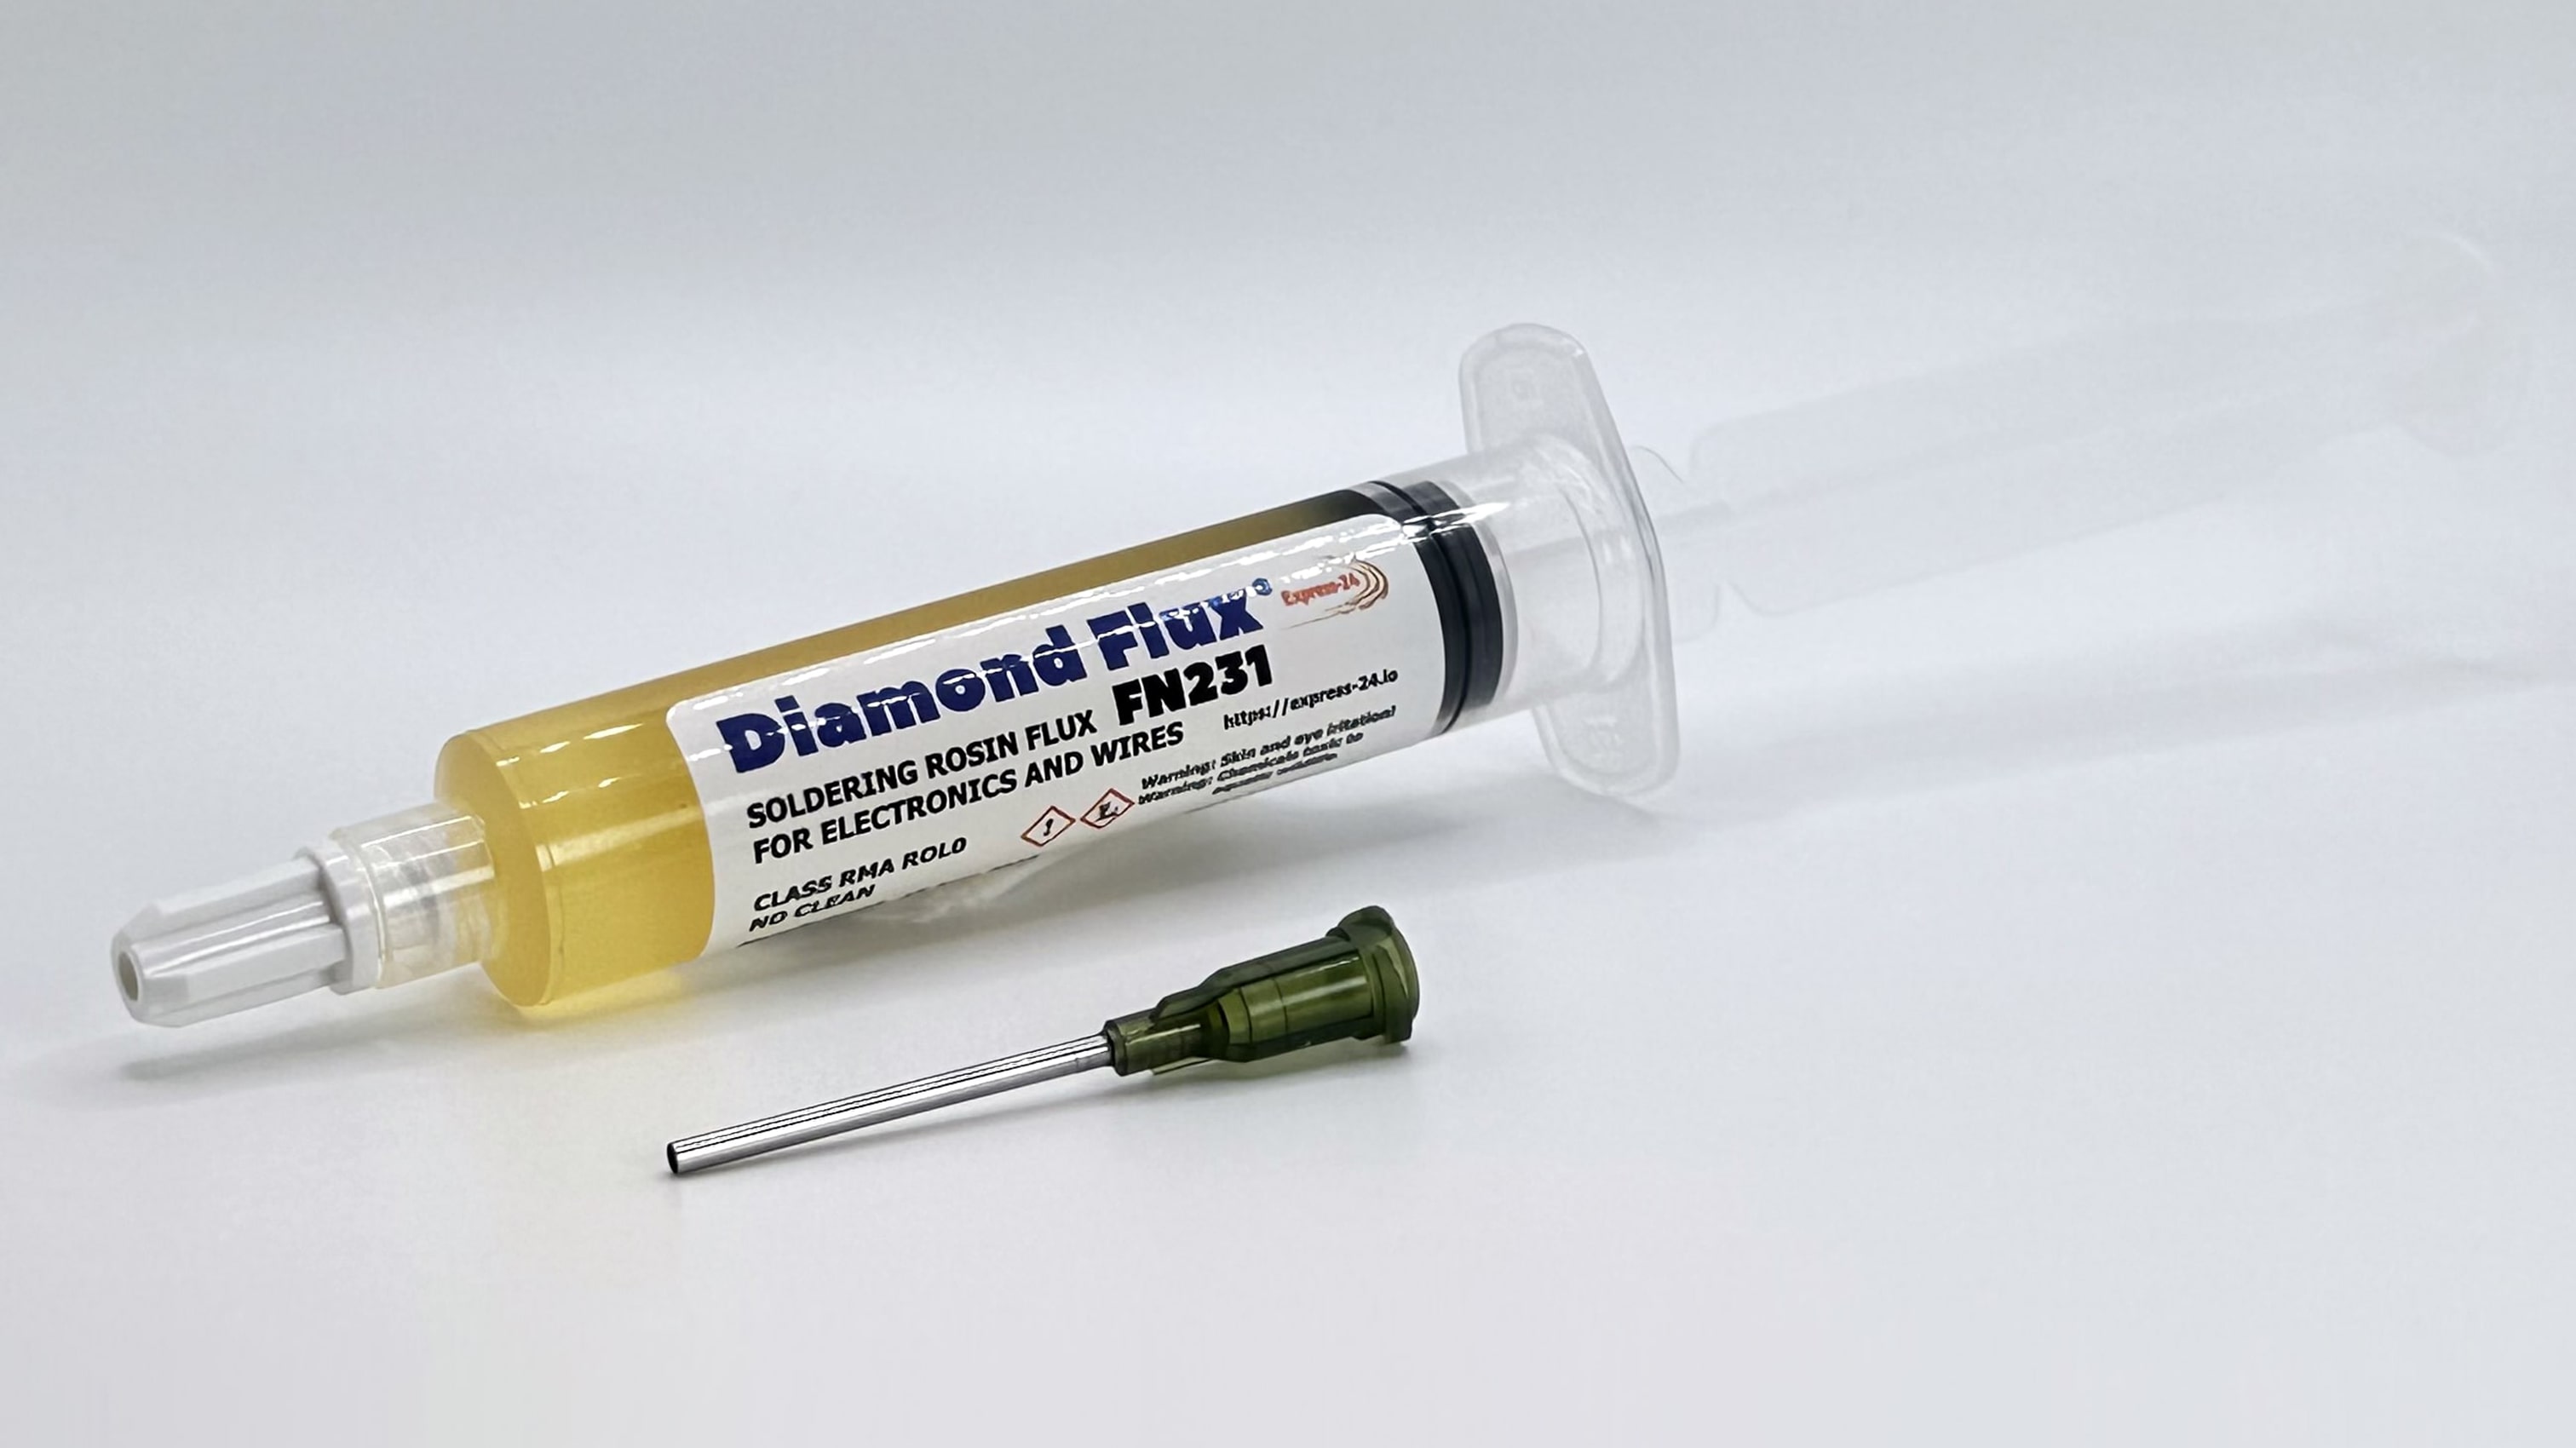 soldering Flux syringe buy